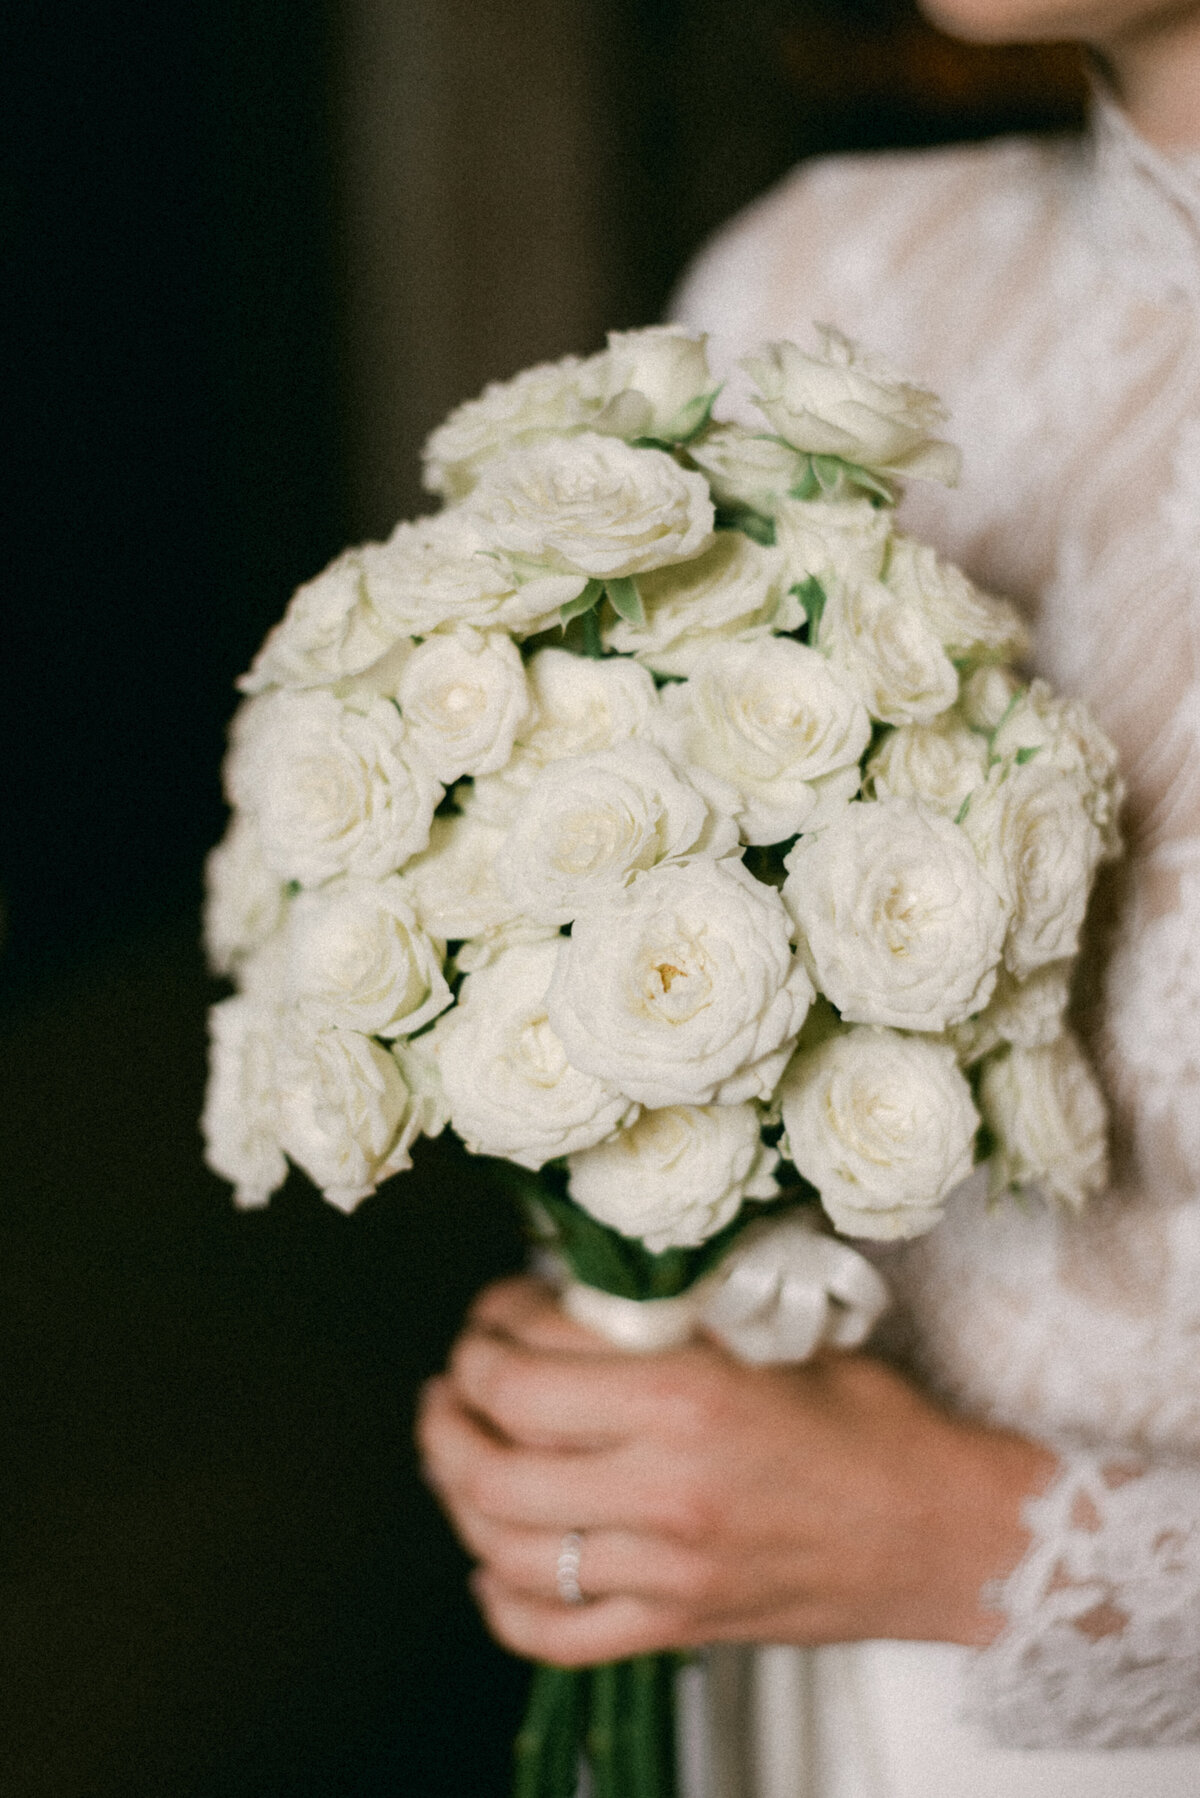 Wedding flower boquet of little white roses.